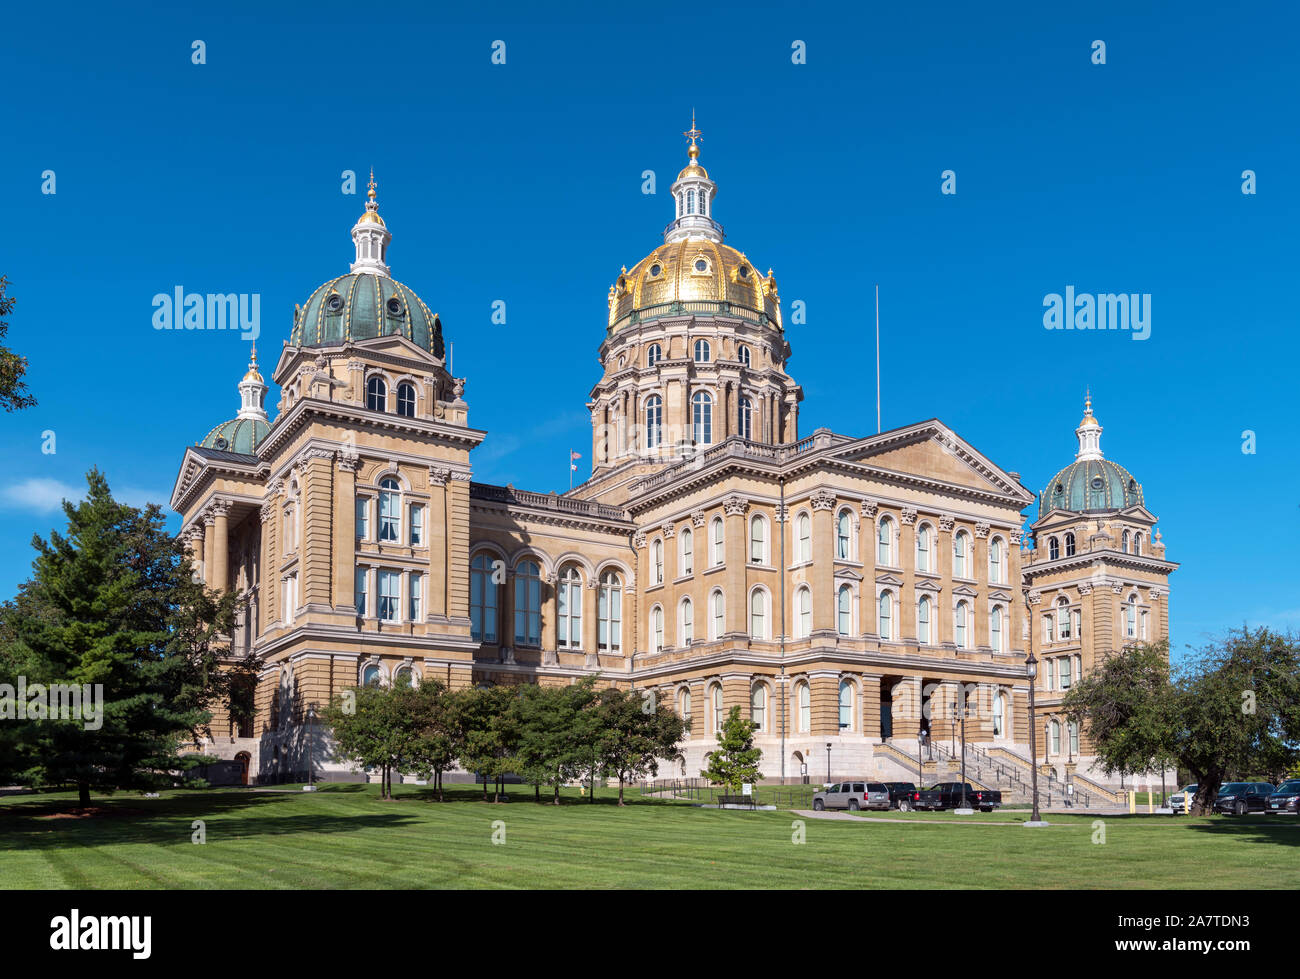 Iowa State Capitol (Iowa Statehouse), Des Moines, Iowa, USA. Stock Photo